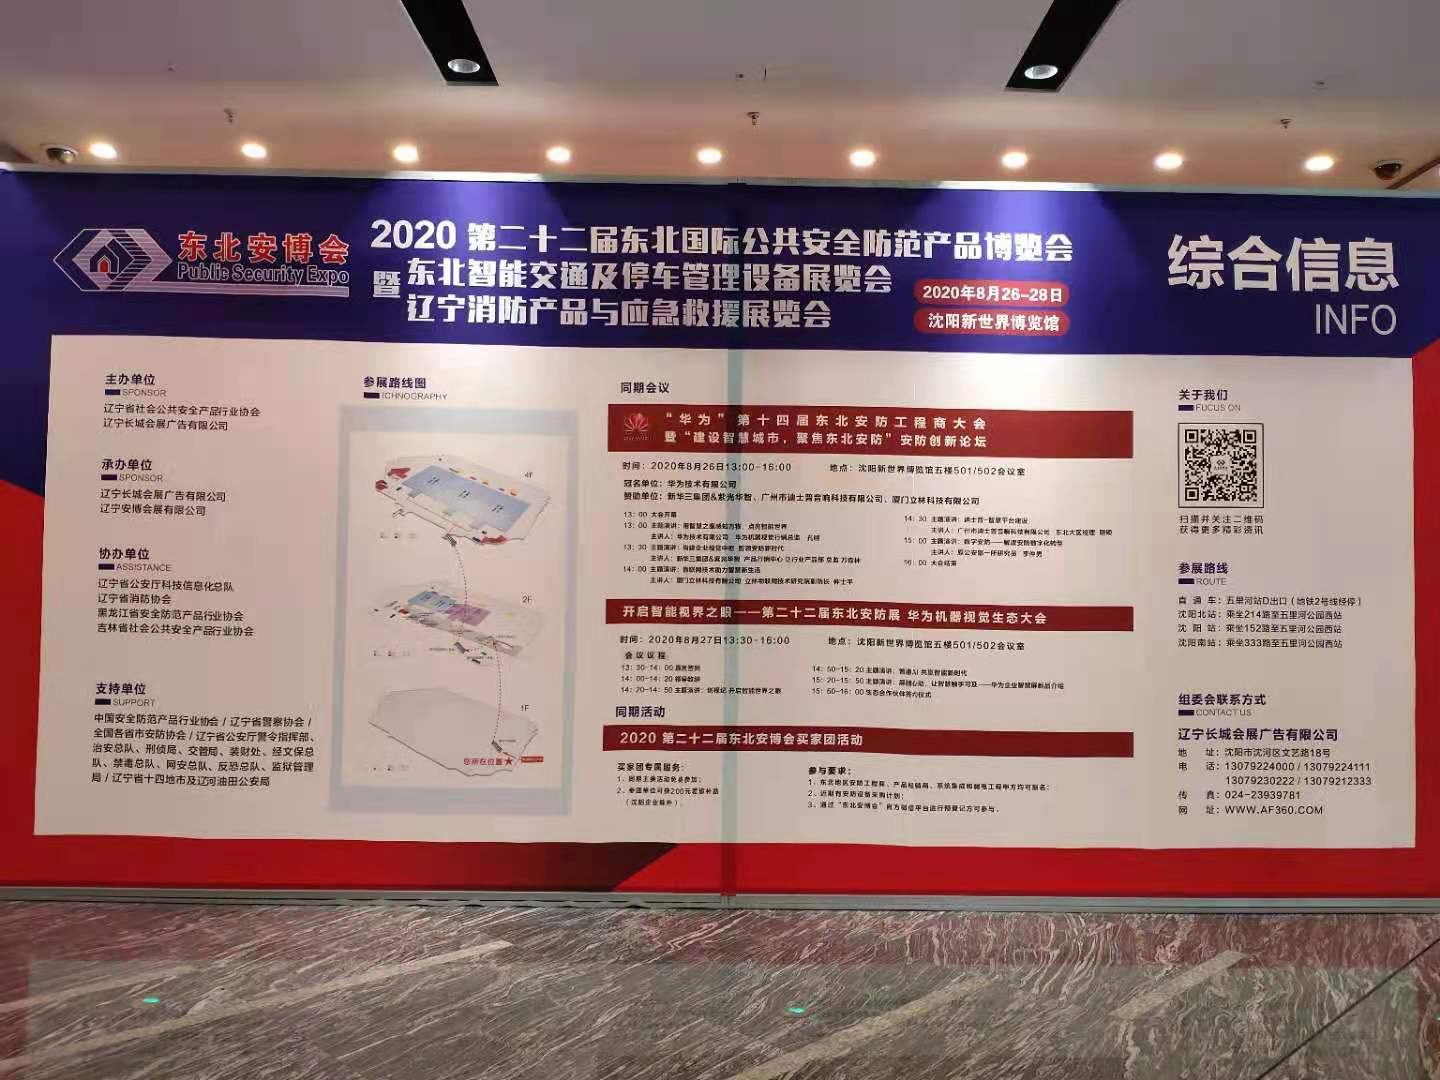 2020 东北国际公共安全博览会